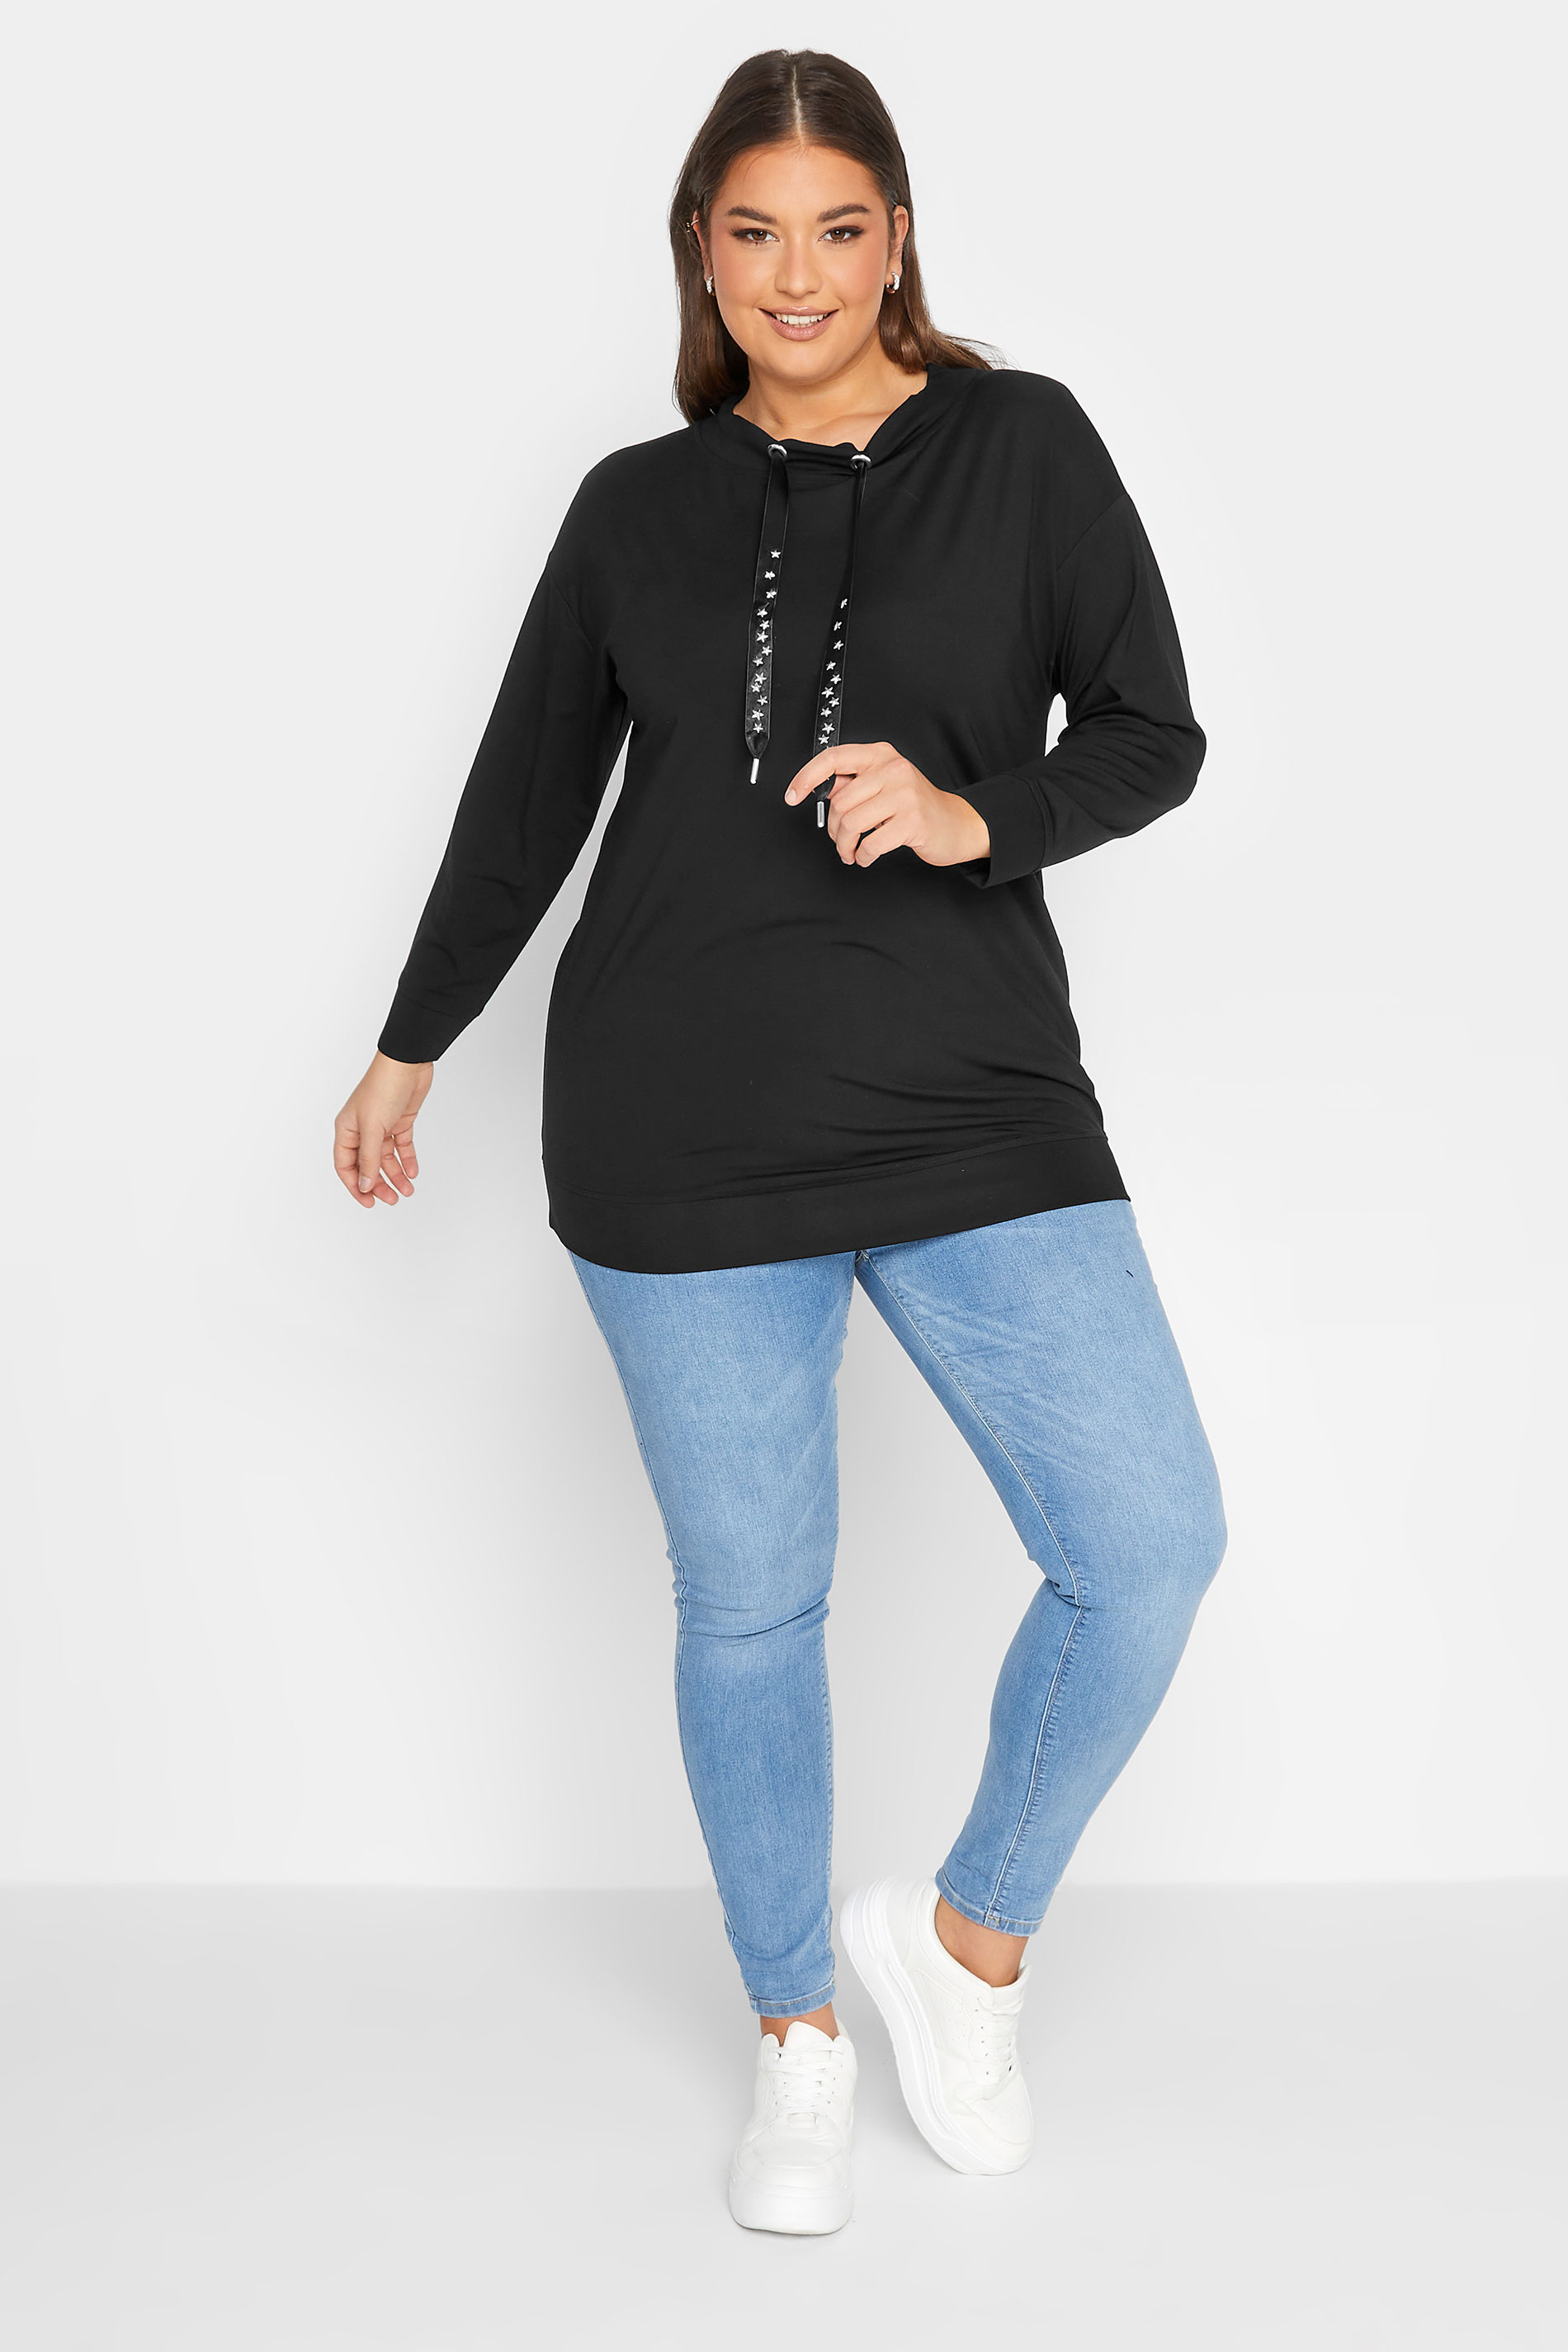 YOURS LUXURY Plus Size Black Star Embellished Sweatshirt | Yours Clothing 2